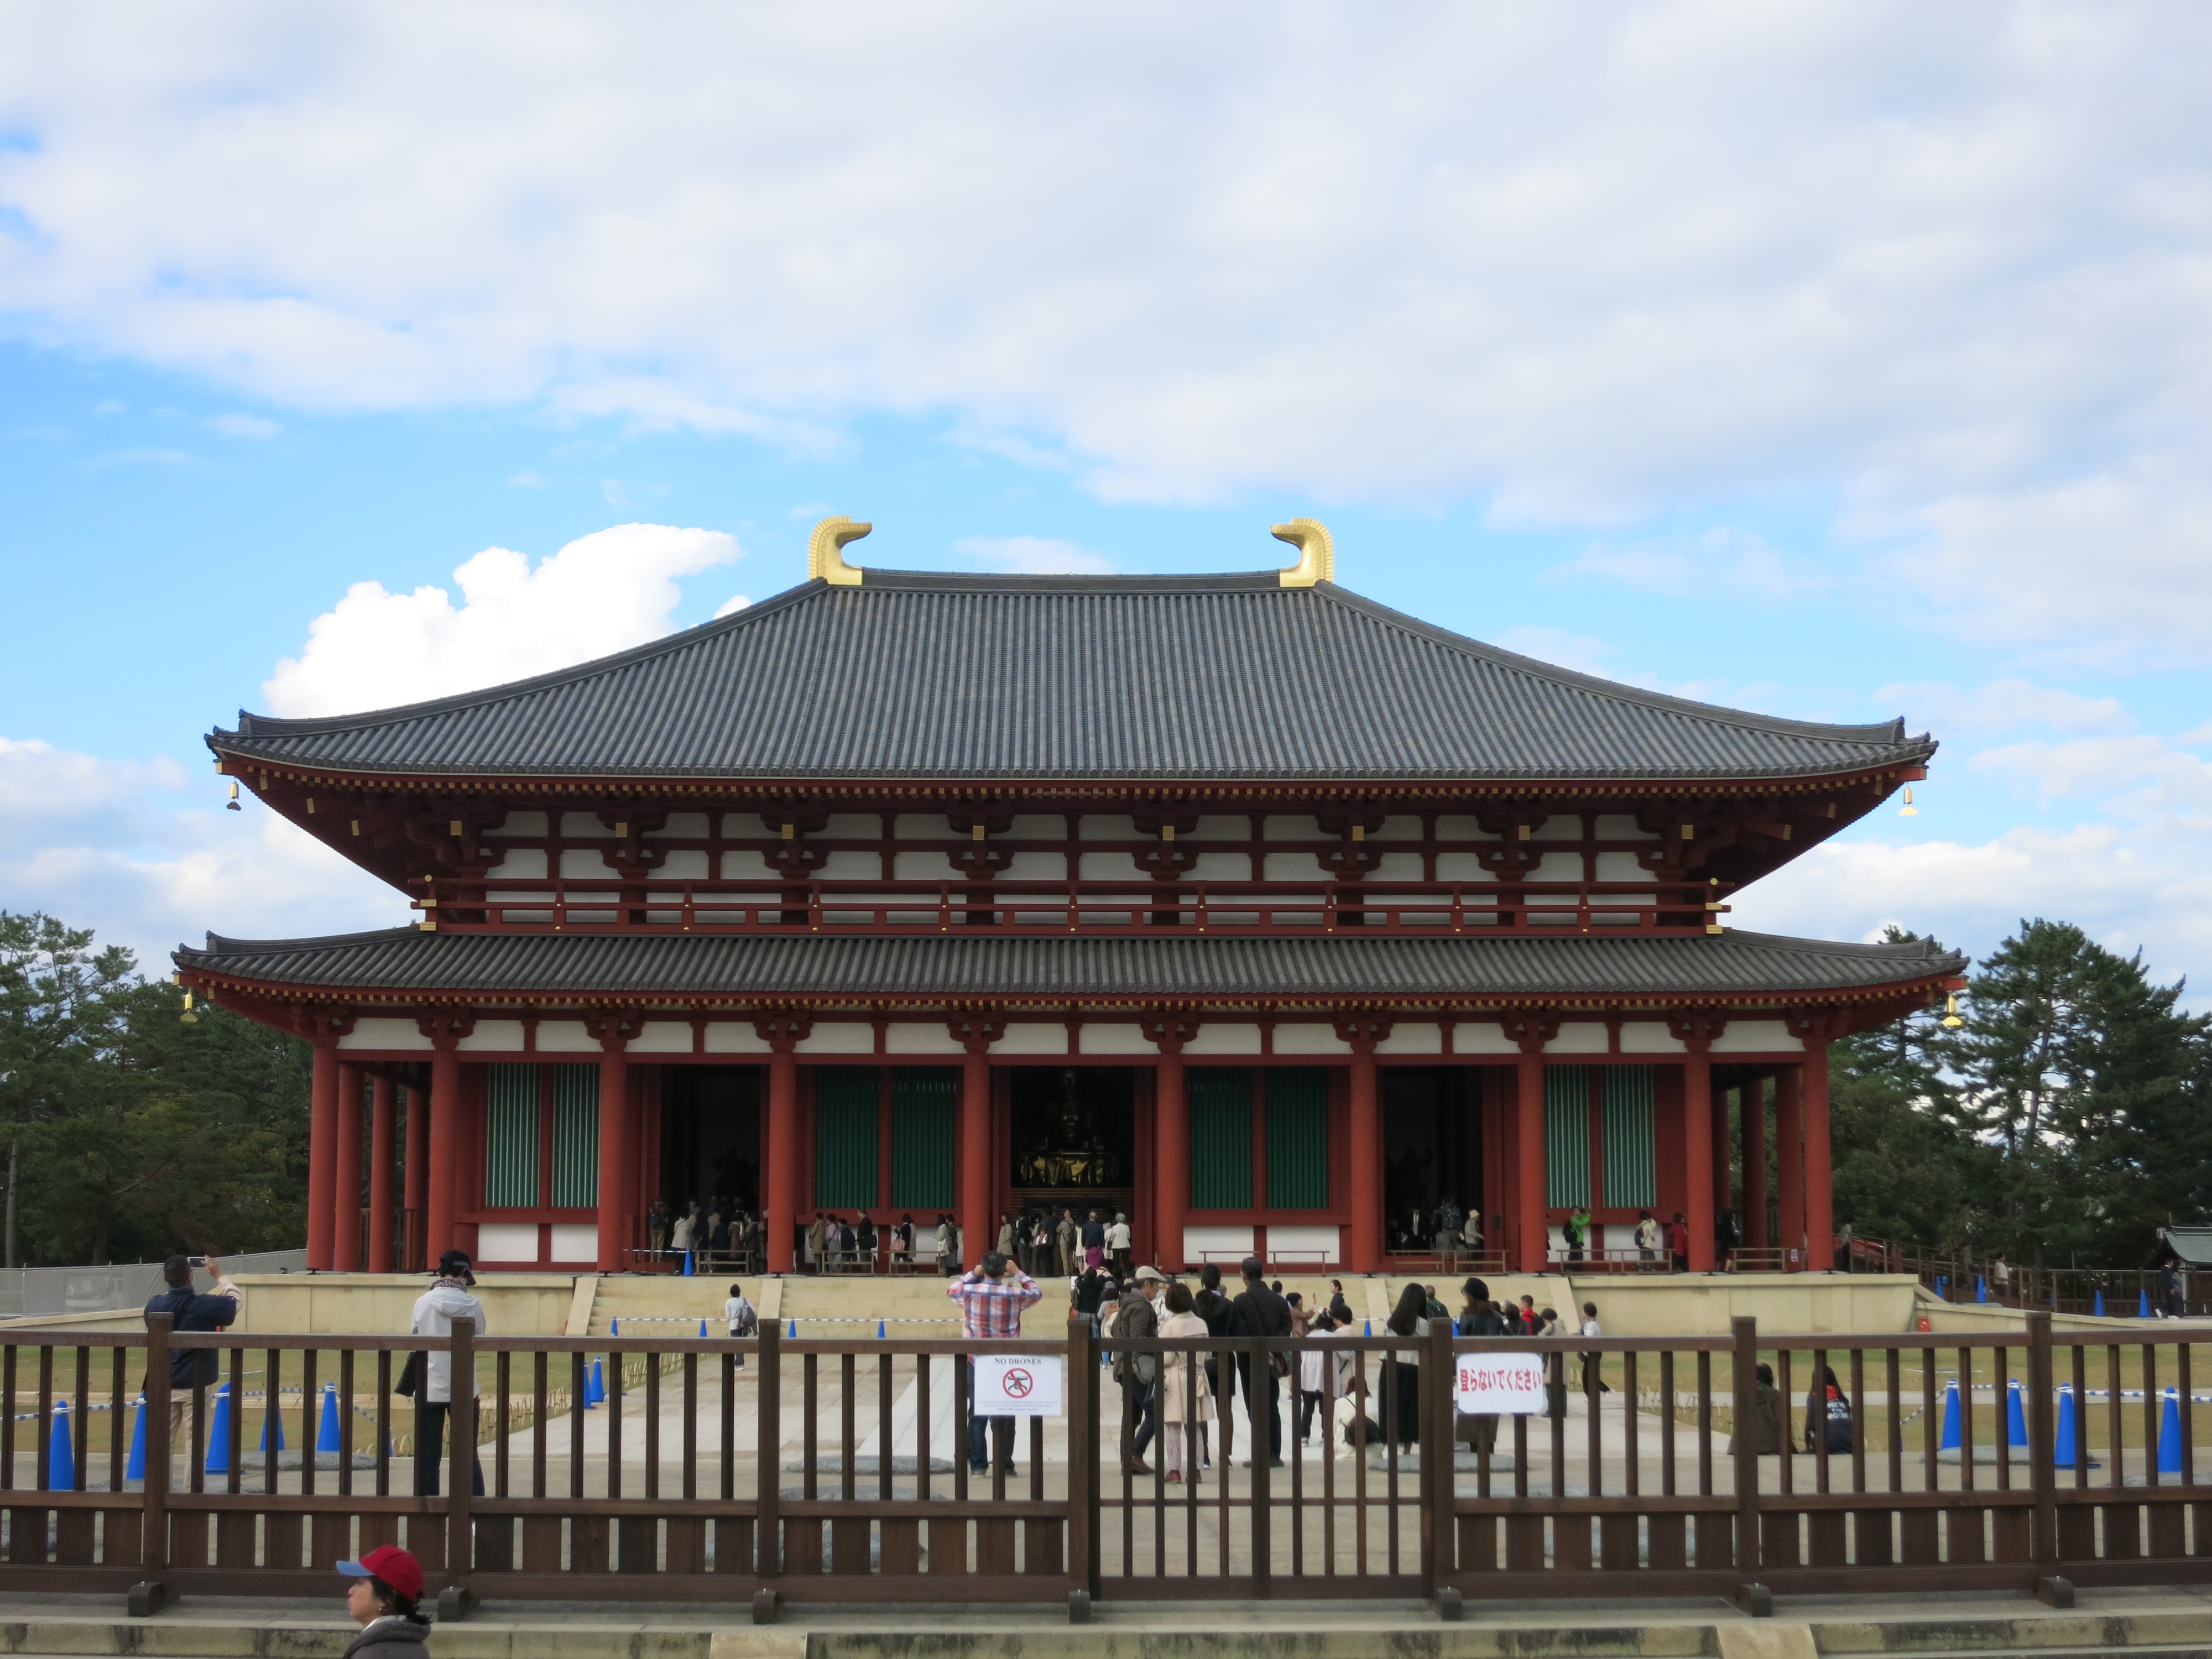 興福寺中金堂は、約300年ぶりの落慶とのことで、創建当時の姿を見ることが出来ます。